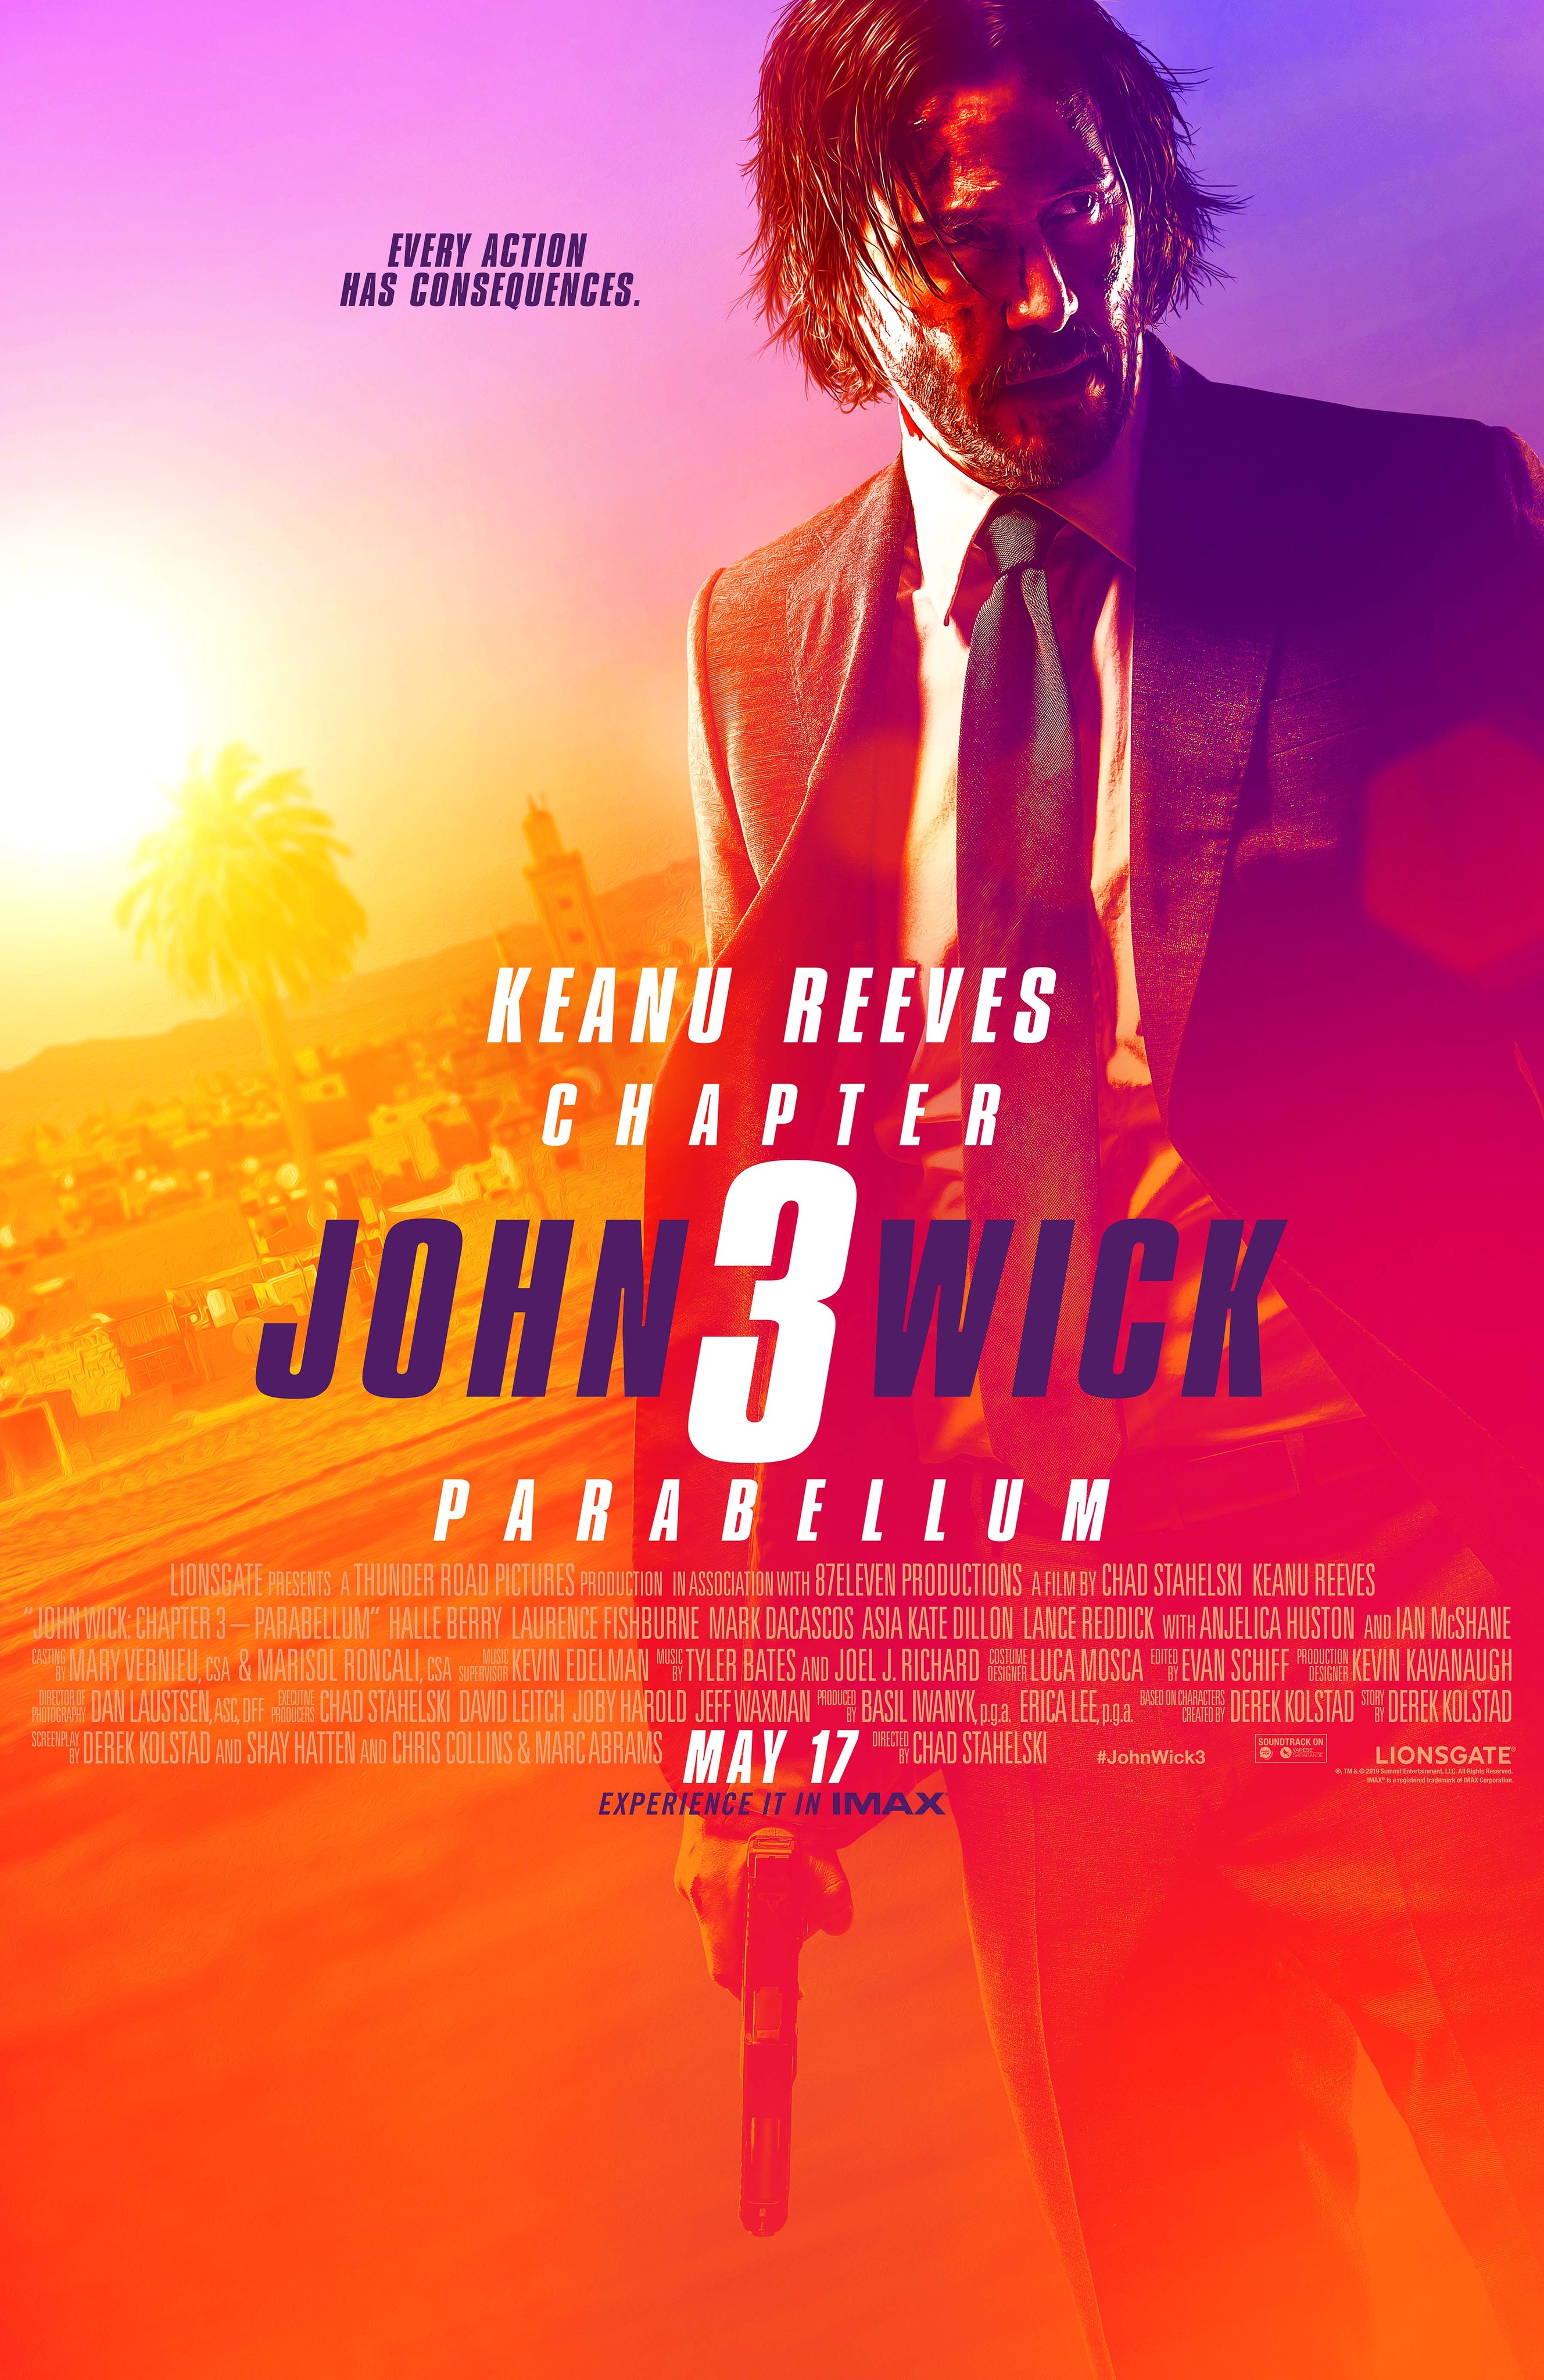 John Wick 5' Script is Currently Being Written — World of Reel